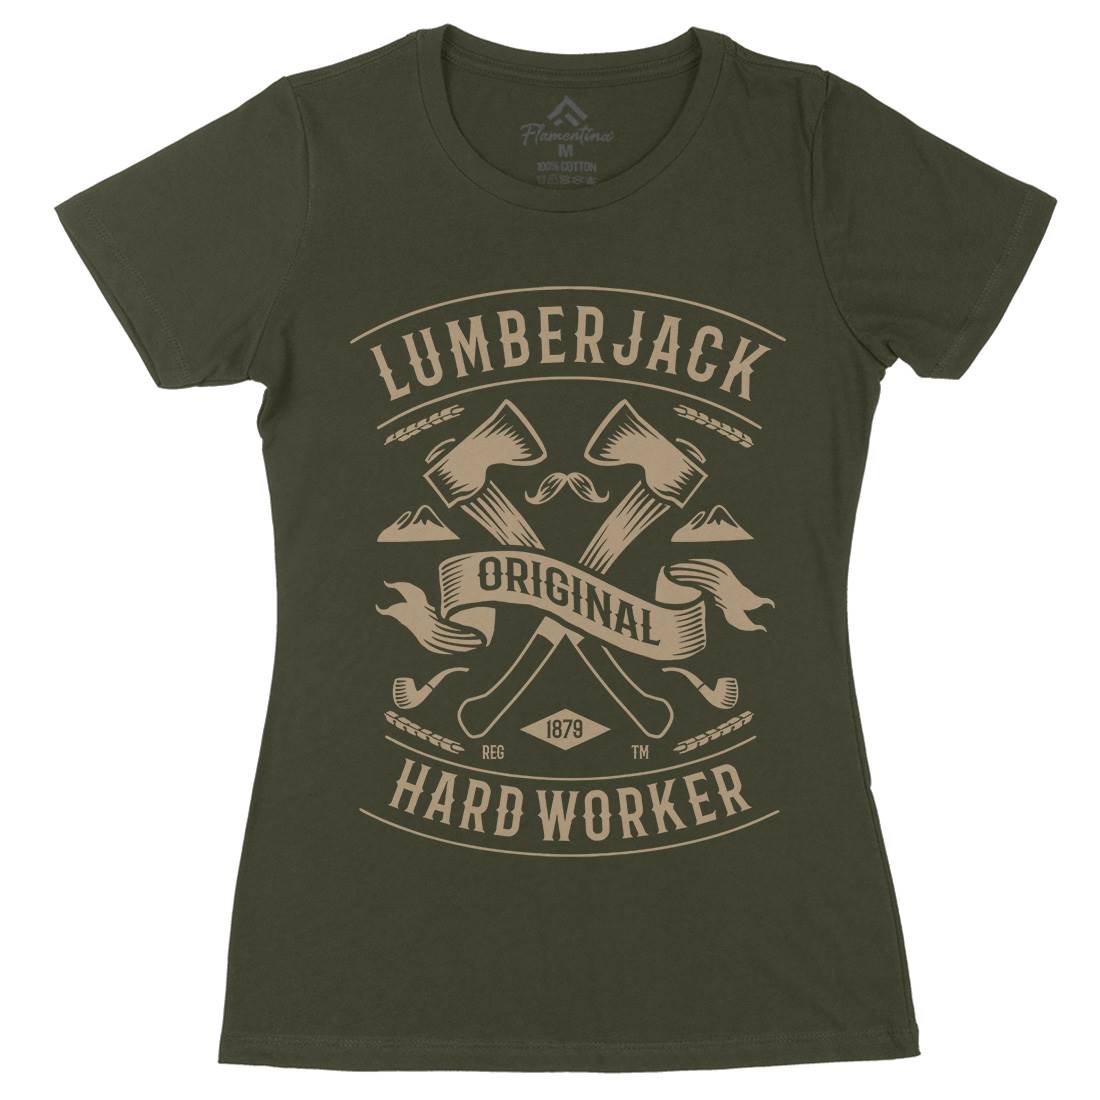 Lumberjack Womens Organic Crew Neck T-Shirt Retro B229